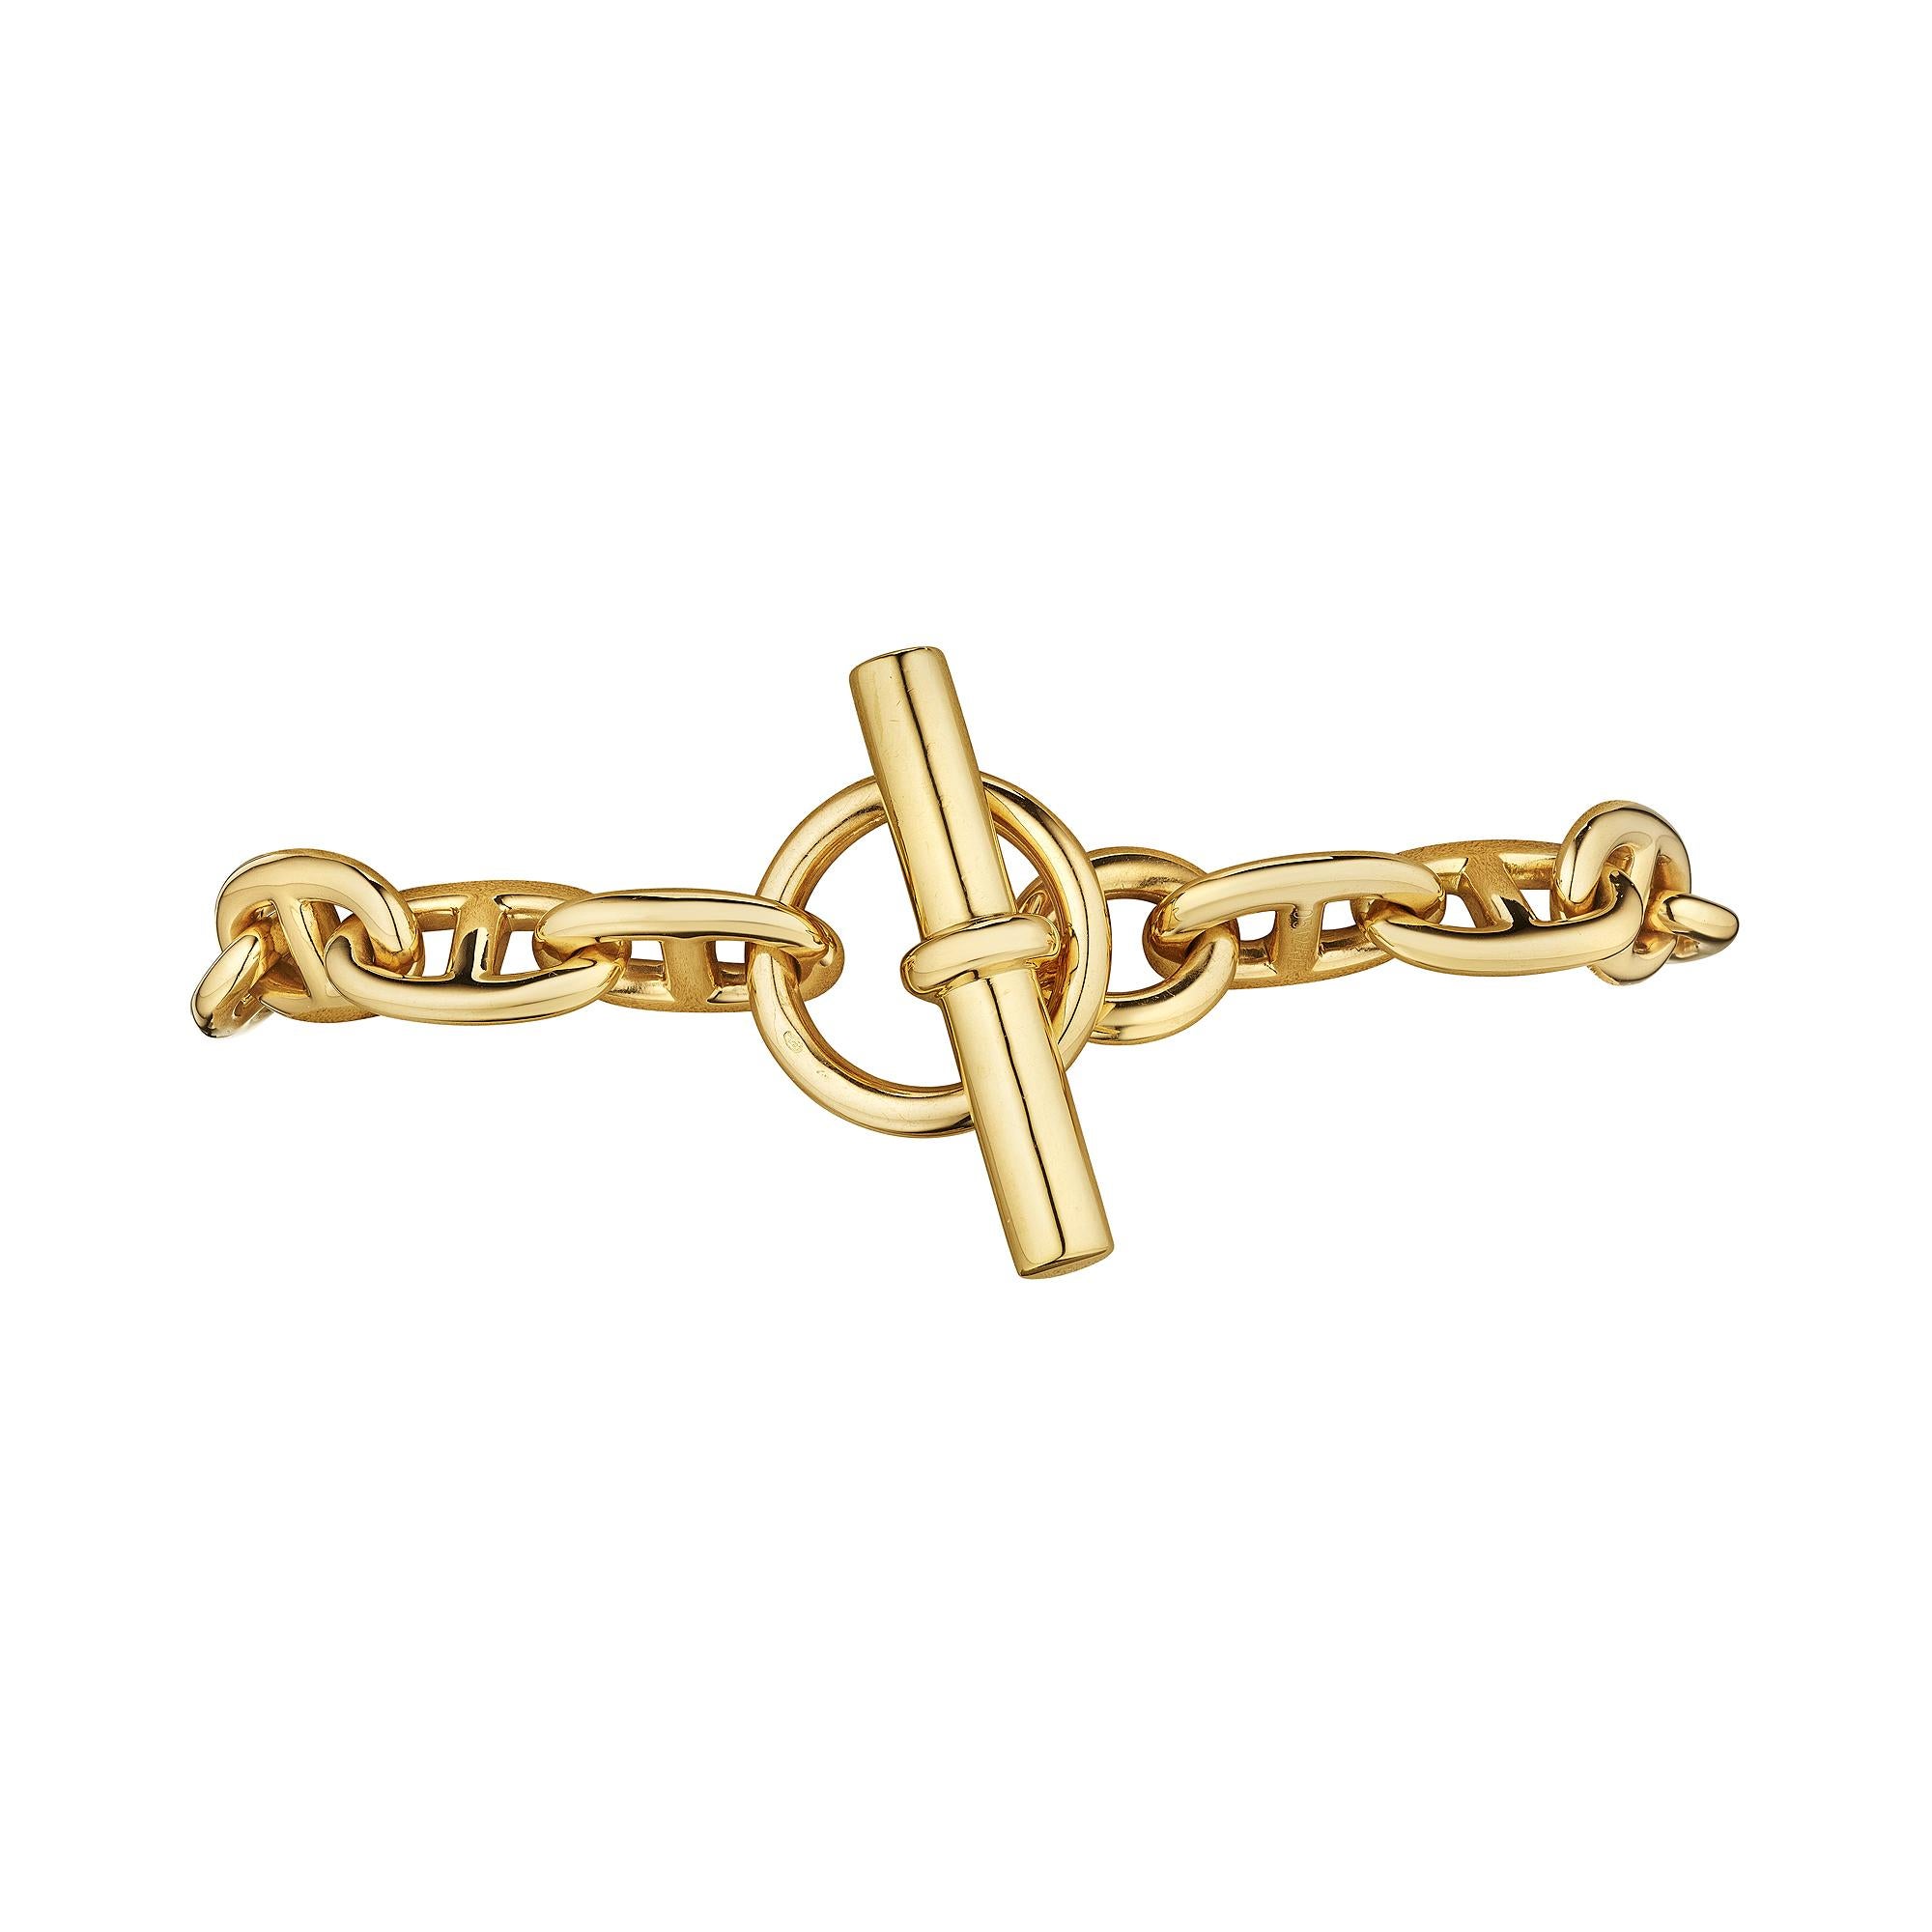 Kühn und kompromisslos ist dieses modernistische 'chaine d'ancre' Armband von Hermes Paris mit mittlerem Gliederarmband das Statement, nach dem Sie schon lange gesucht haben. Mit seinen 15 Gliedern ist dieses polierte Armband aus 18 Karat Gelbgold